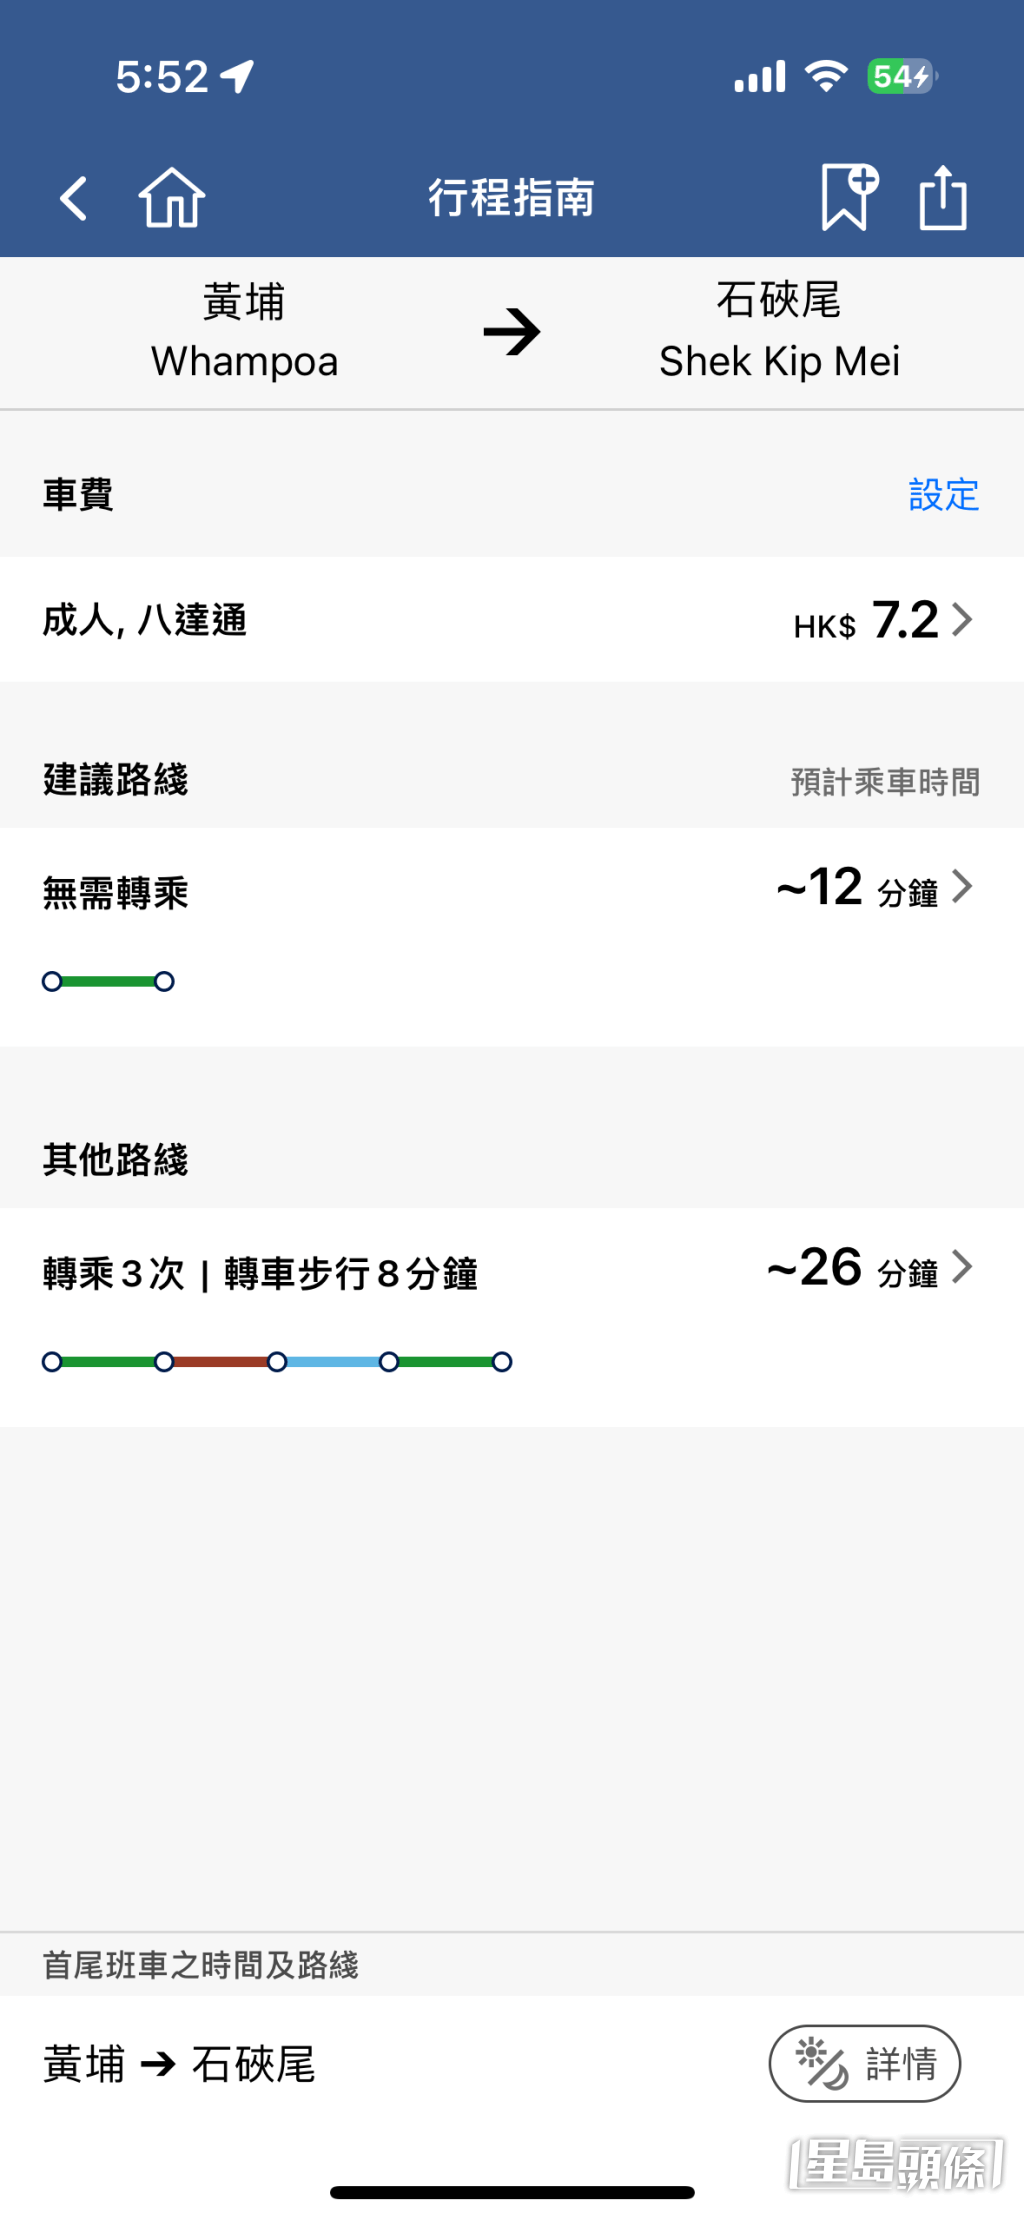 乘客若想從黃埔站去石硤尾站，根據港鐵APP行程指南，原本不用轉車，僅需時12分鐘。